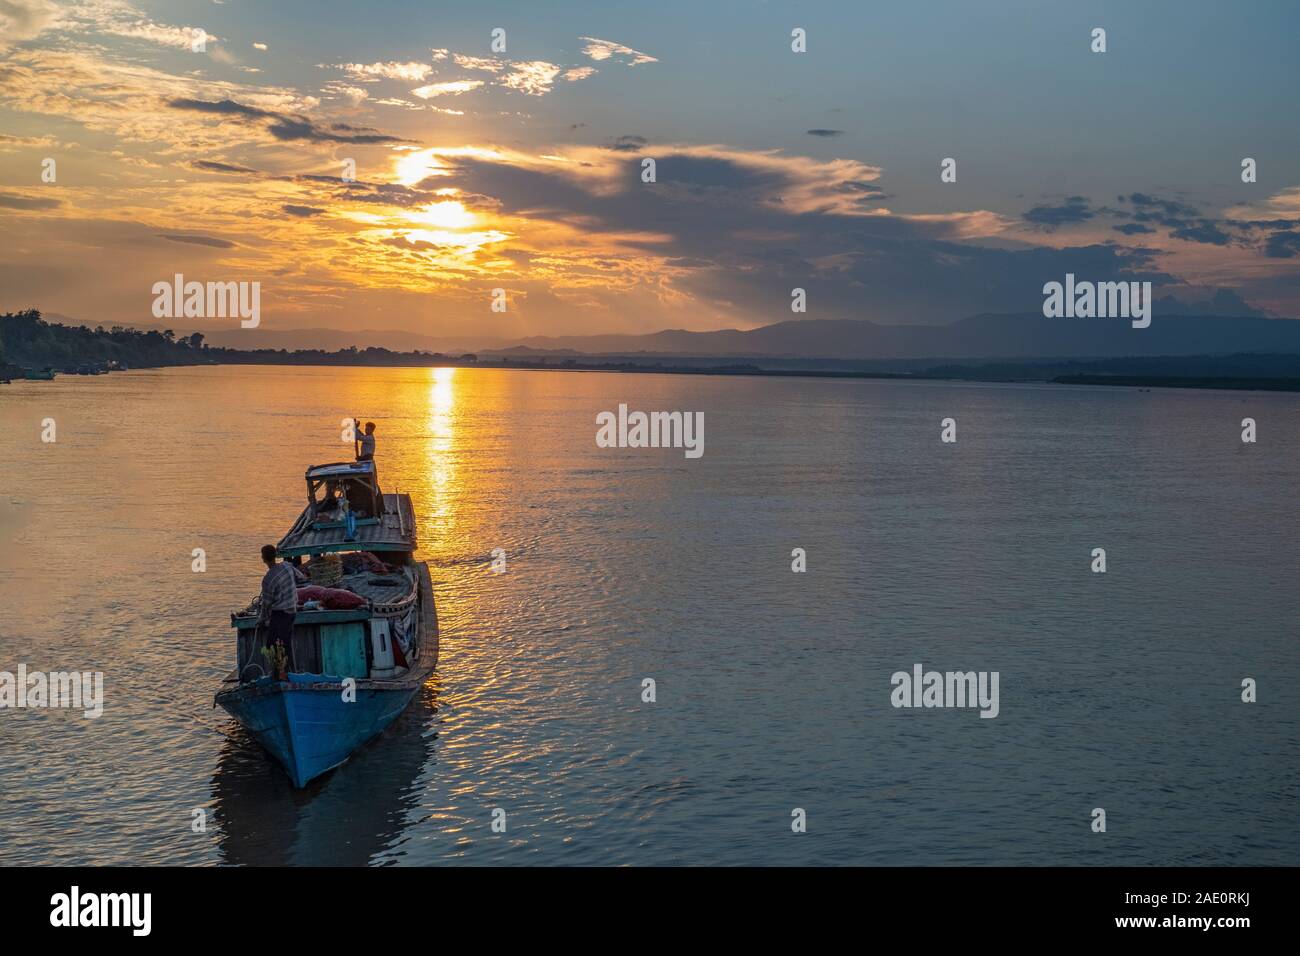 Des croisières en bateau sur la rivière La rivière Chindwin en direction de port au coucher du soleil dans le nord-ouest de l'approche du Myanmar (Birmanie) Banque D'Images